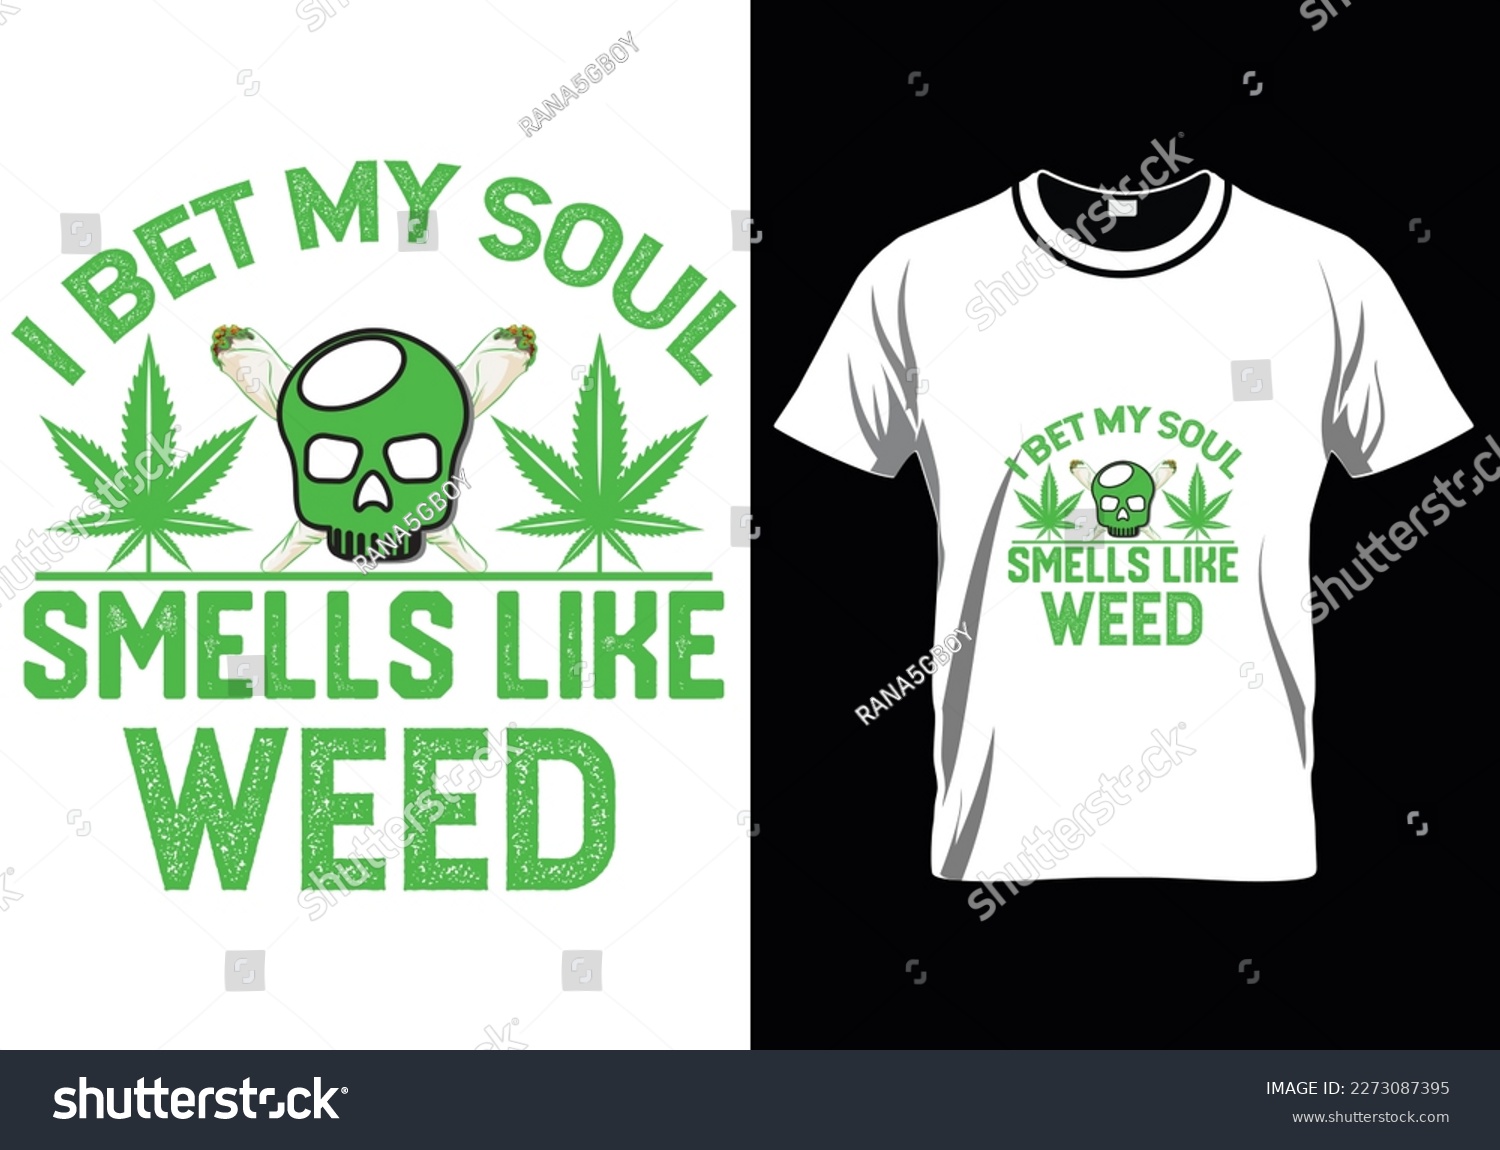 SVG of 
I Bet My Soul Weed T-Shirt Design svg